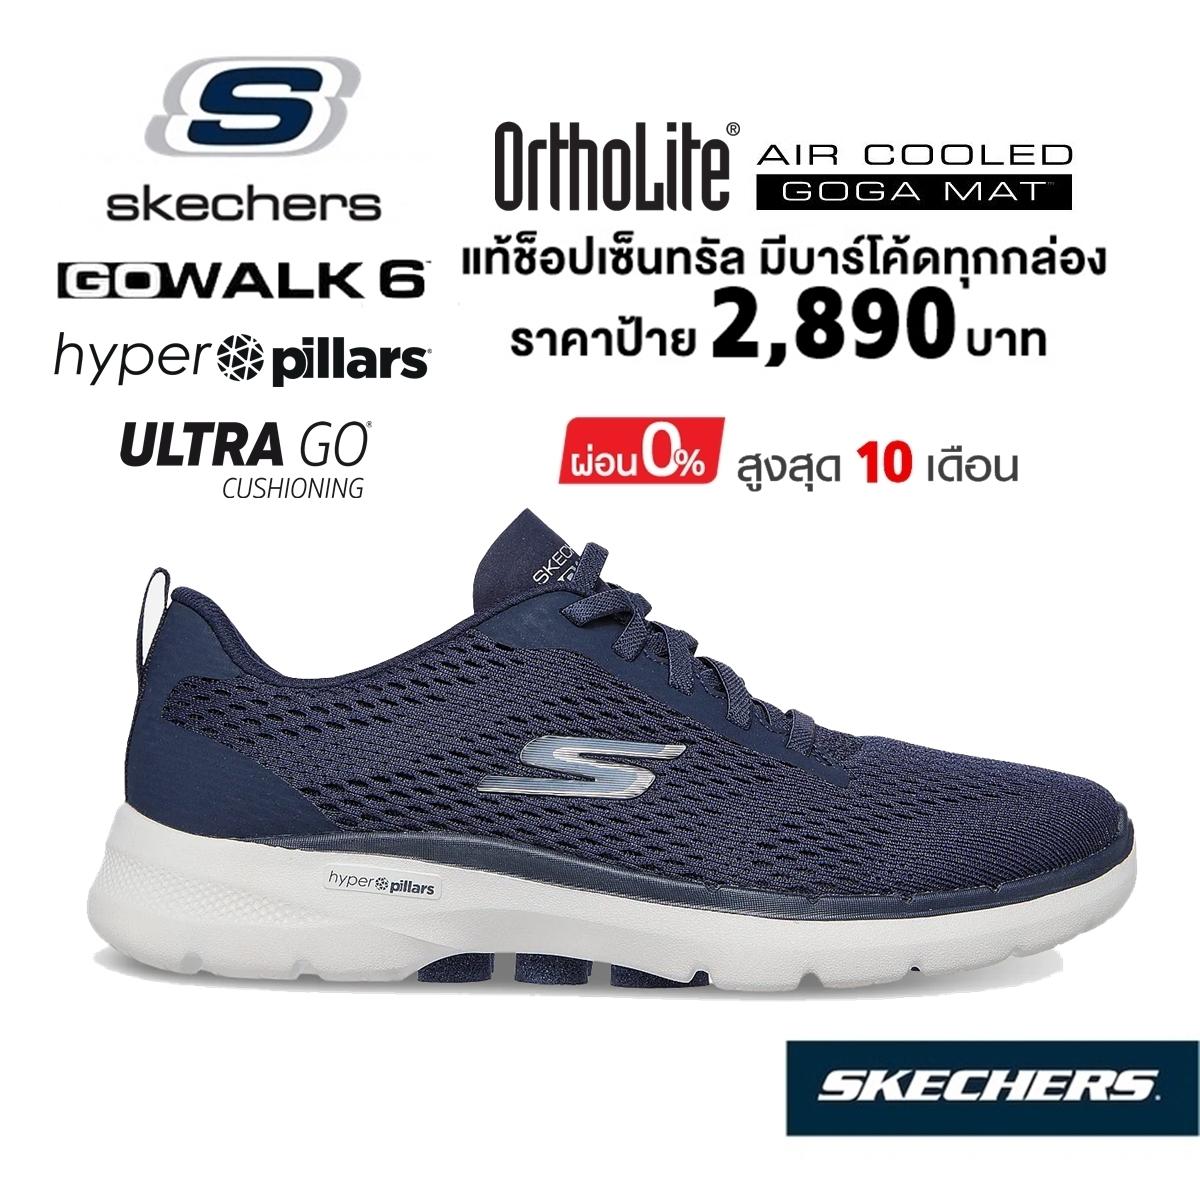 💸โปรฯ 1,800 🇹🇭 แท้~ช็อปไทย​ 🇹🇭 SKECHERS Gowalk 6 - Bold Vision รองเท้าผ้าใบสุขภาพ ใส่ทำงาน ผ้าใบนักศึกษา สีกรมท่า 124512